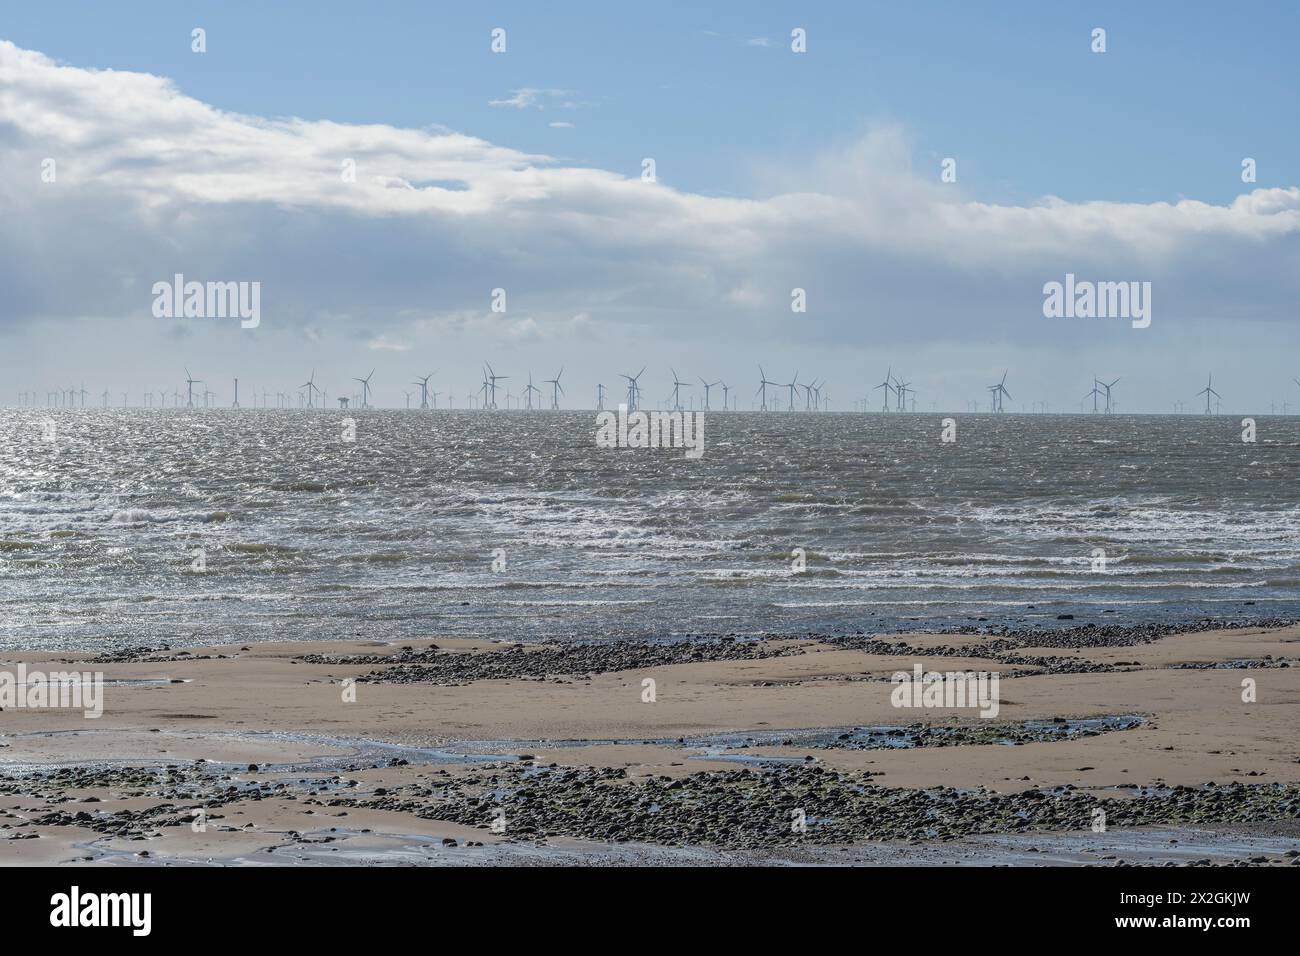 Éoliennes offshore à l'horizon, partie du parc éolien Walney, Barrow-in-Furness, Cumbria Banque D'Images